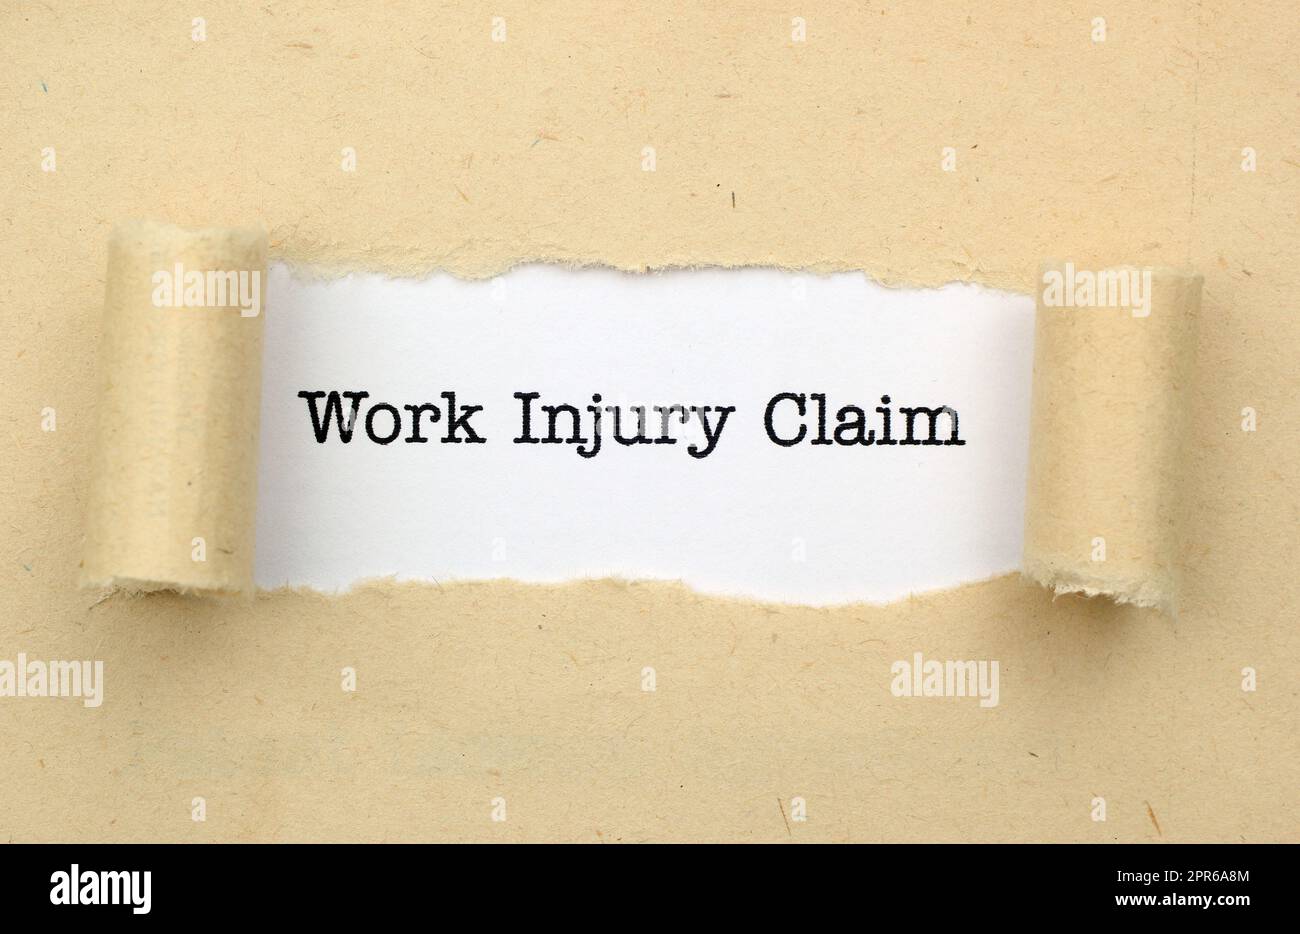 Work injury claim Stock Photo